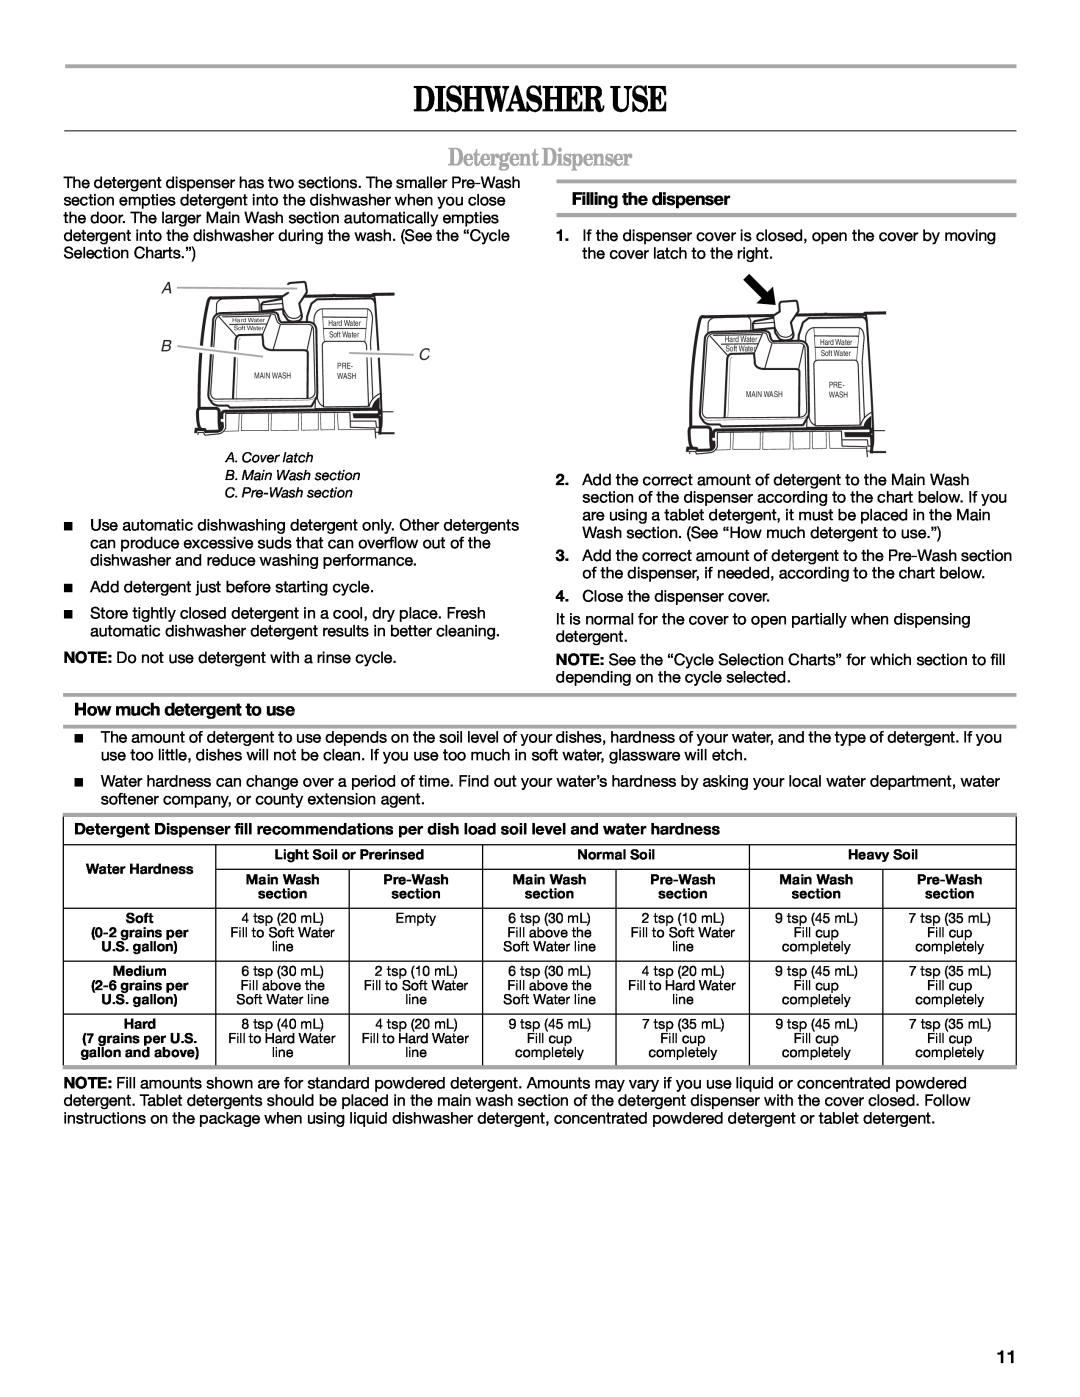 Whirlpool DU1248, DU1200, DU1015 manual Dishwasher Use, DetergentDispenser, Filling the dispenser, How much detergent to use 